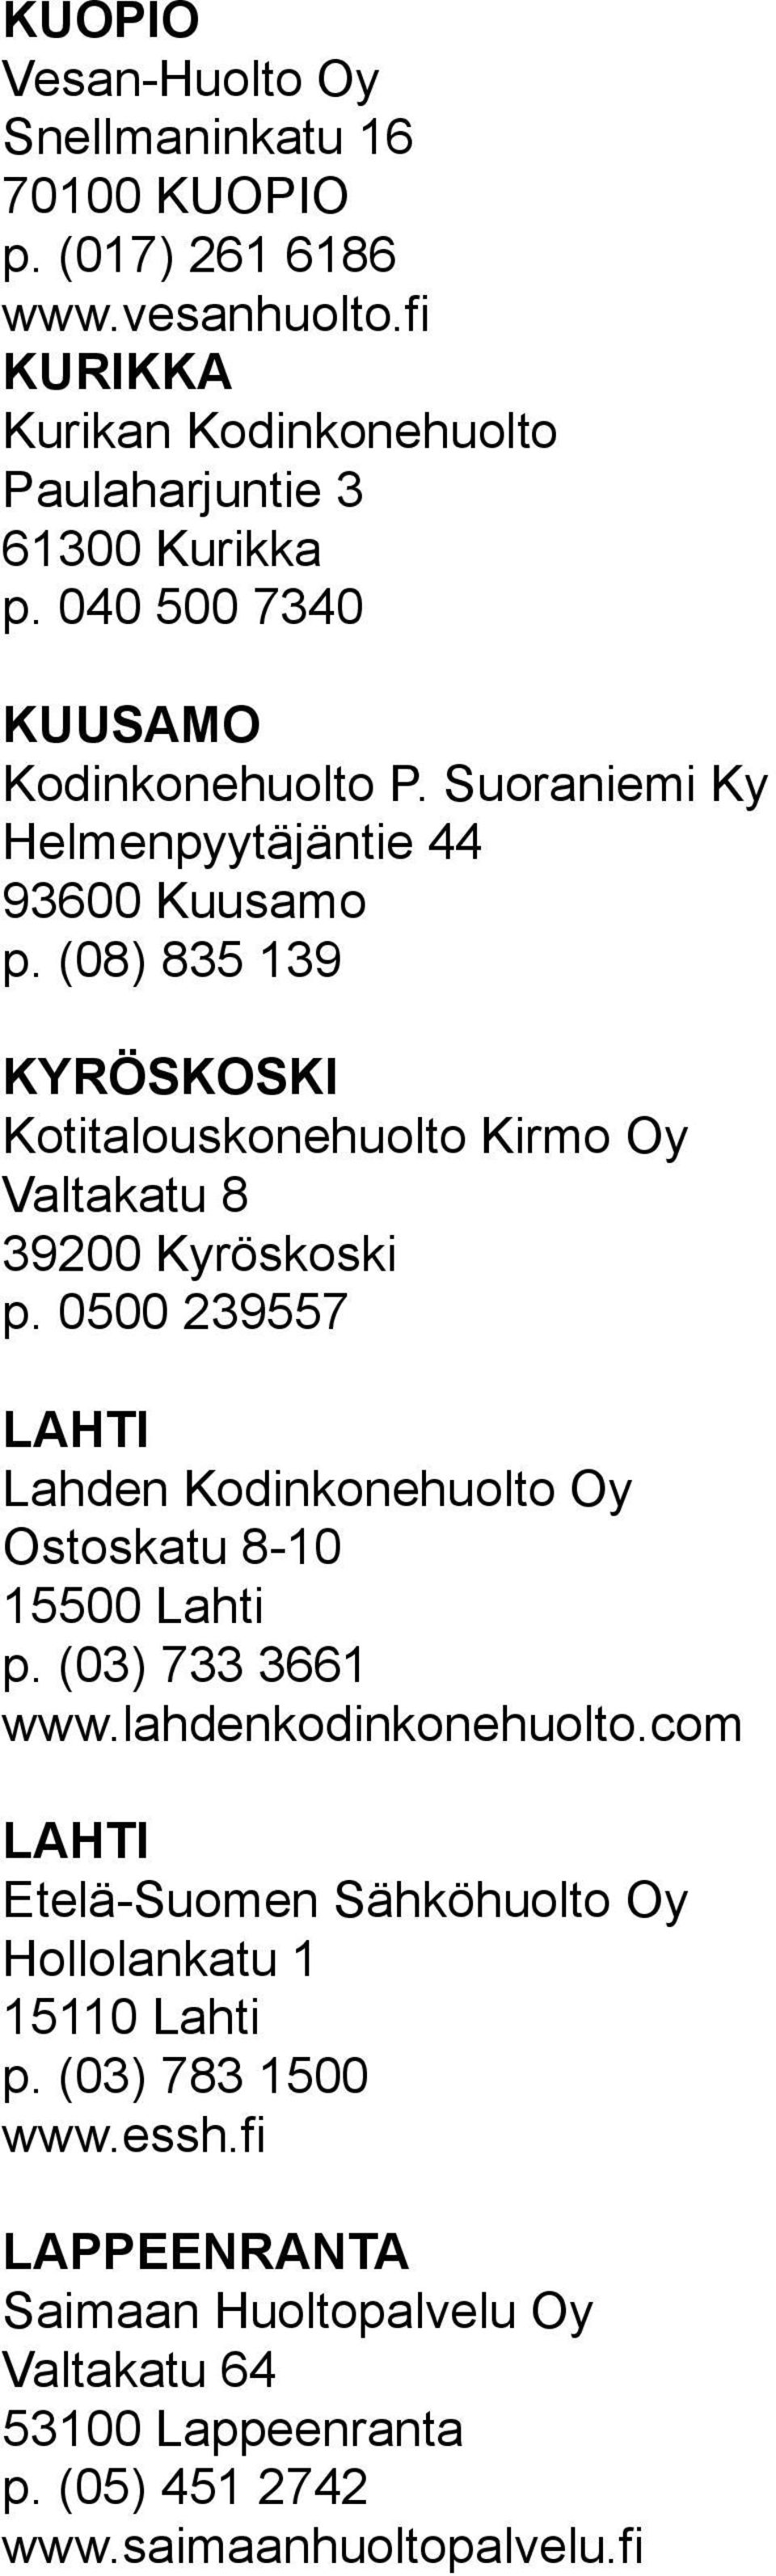 (08) 835 139 KYRÖSKOSKI Kotitalouskonehuolto Kirmo Oy Valtakatu 8 39200 Kyröskoski p. 0500 239557 LAHTI Lahden Kodinkonehuolto Oy Ostoskatu 8-10 15500 Lahti p.